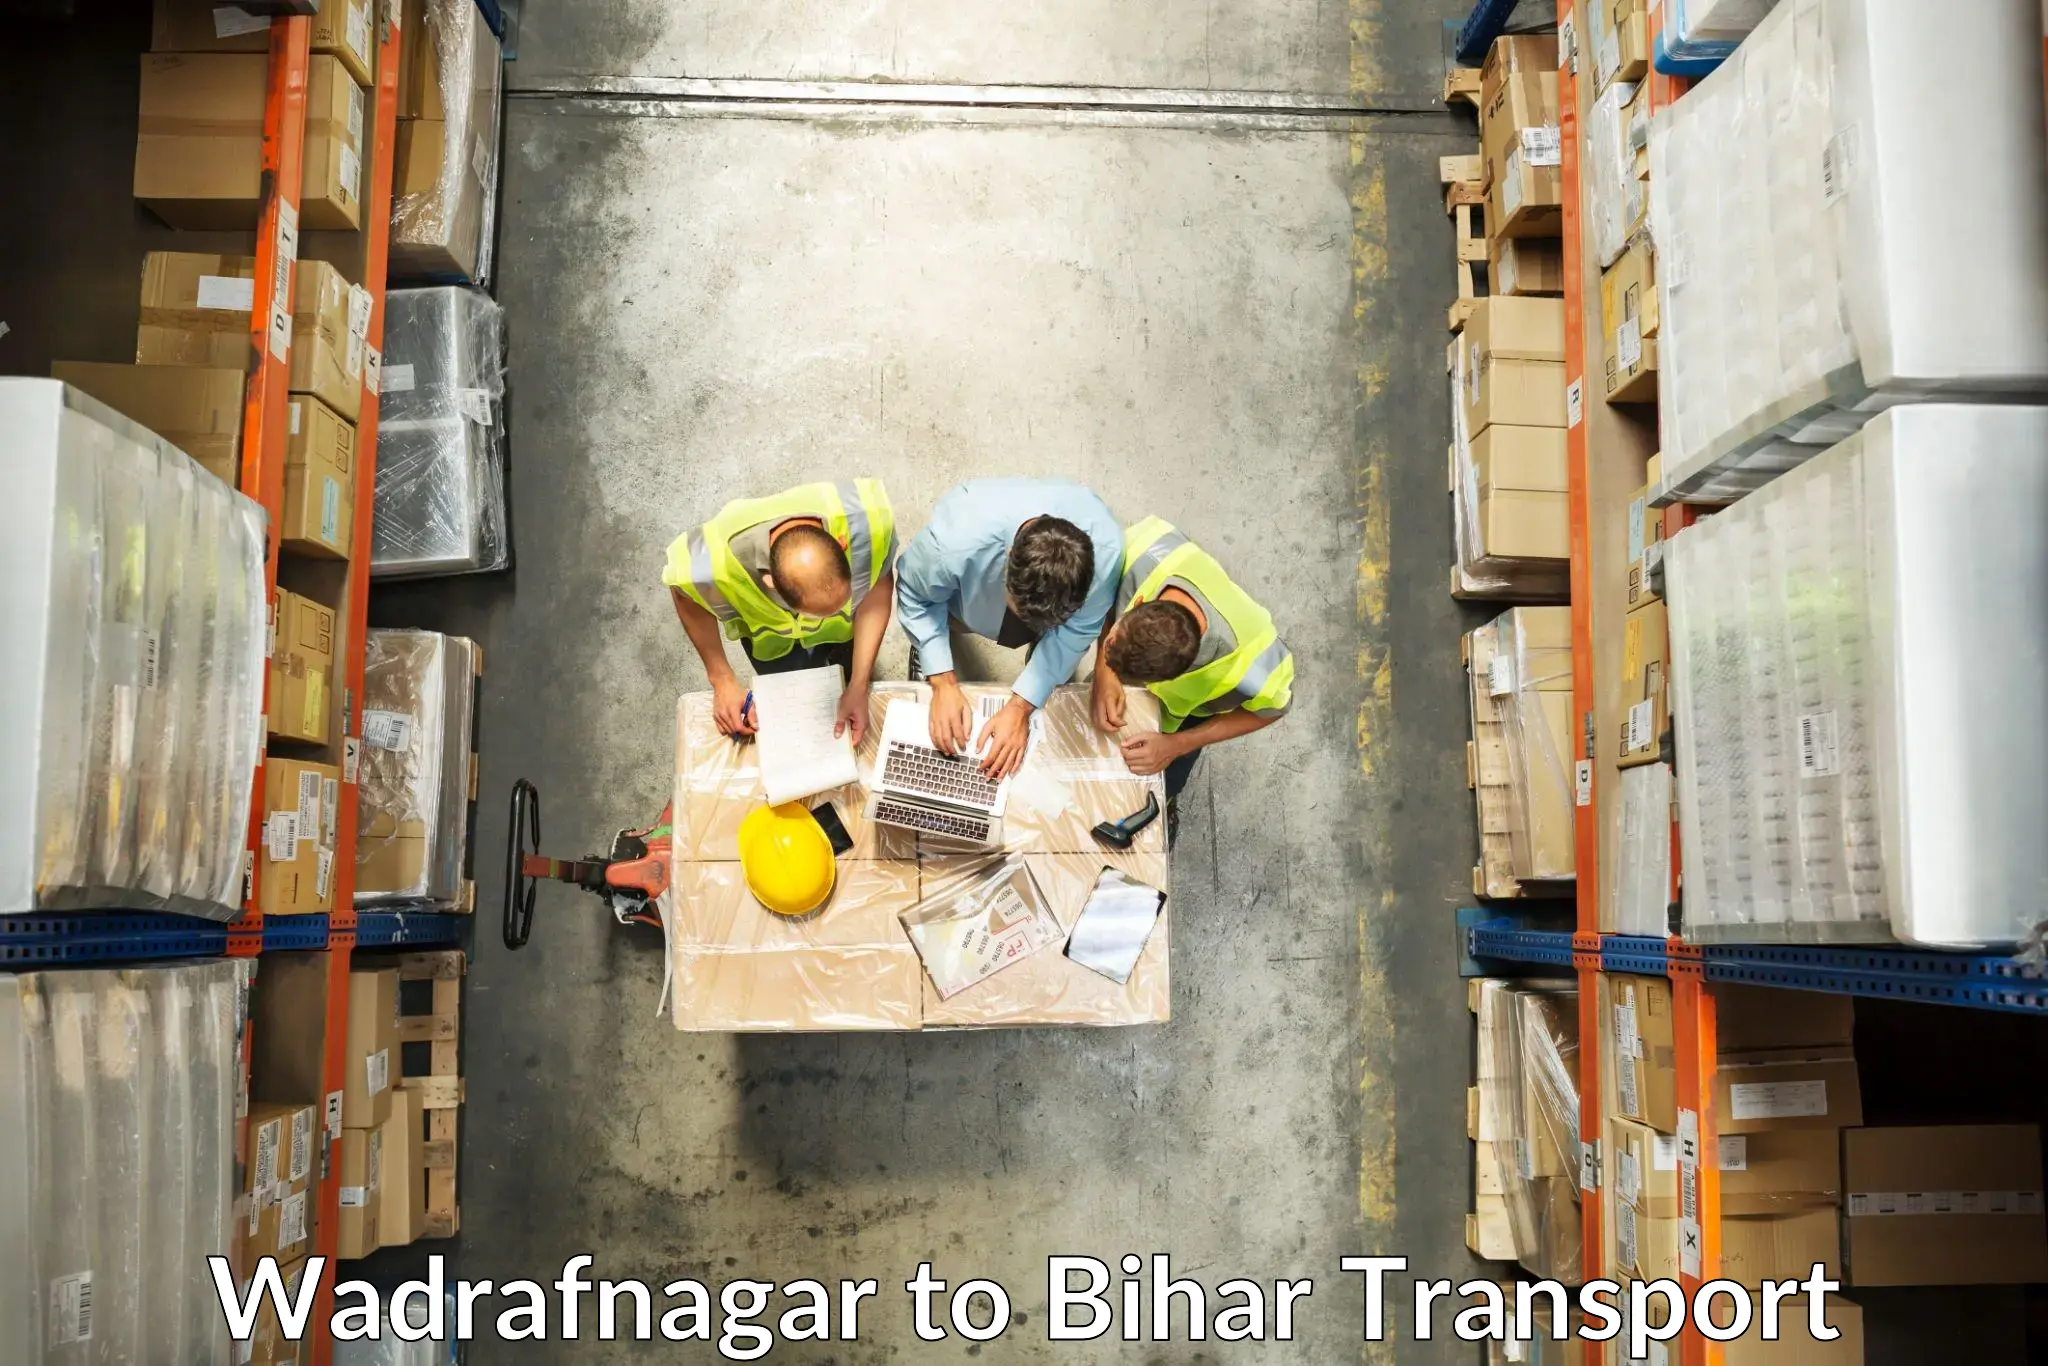 Nearest transport service Wadrafnagar to Arrah